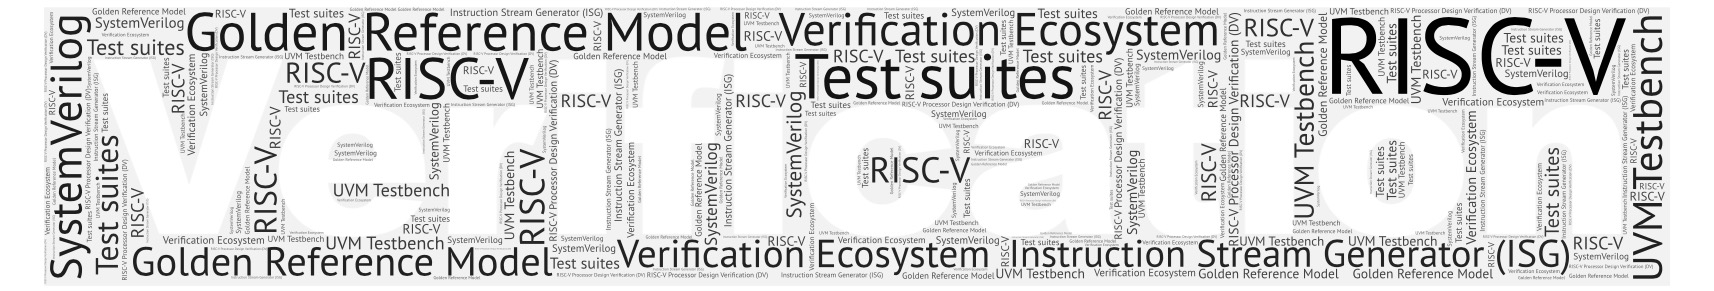 Imperas RISC-V Verification